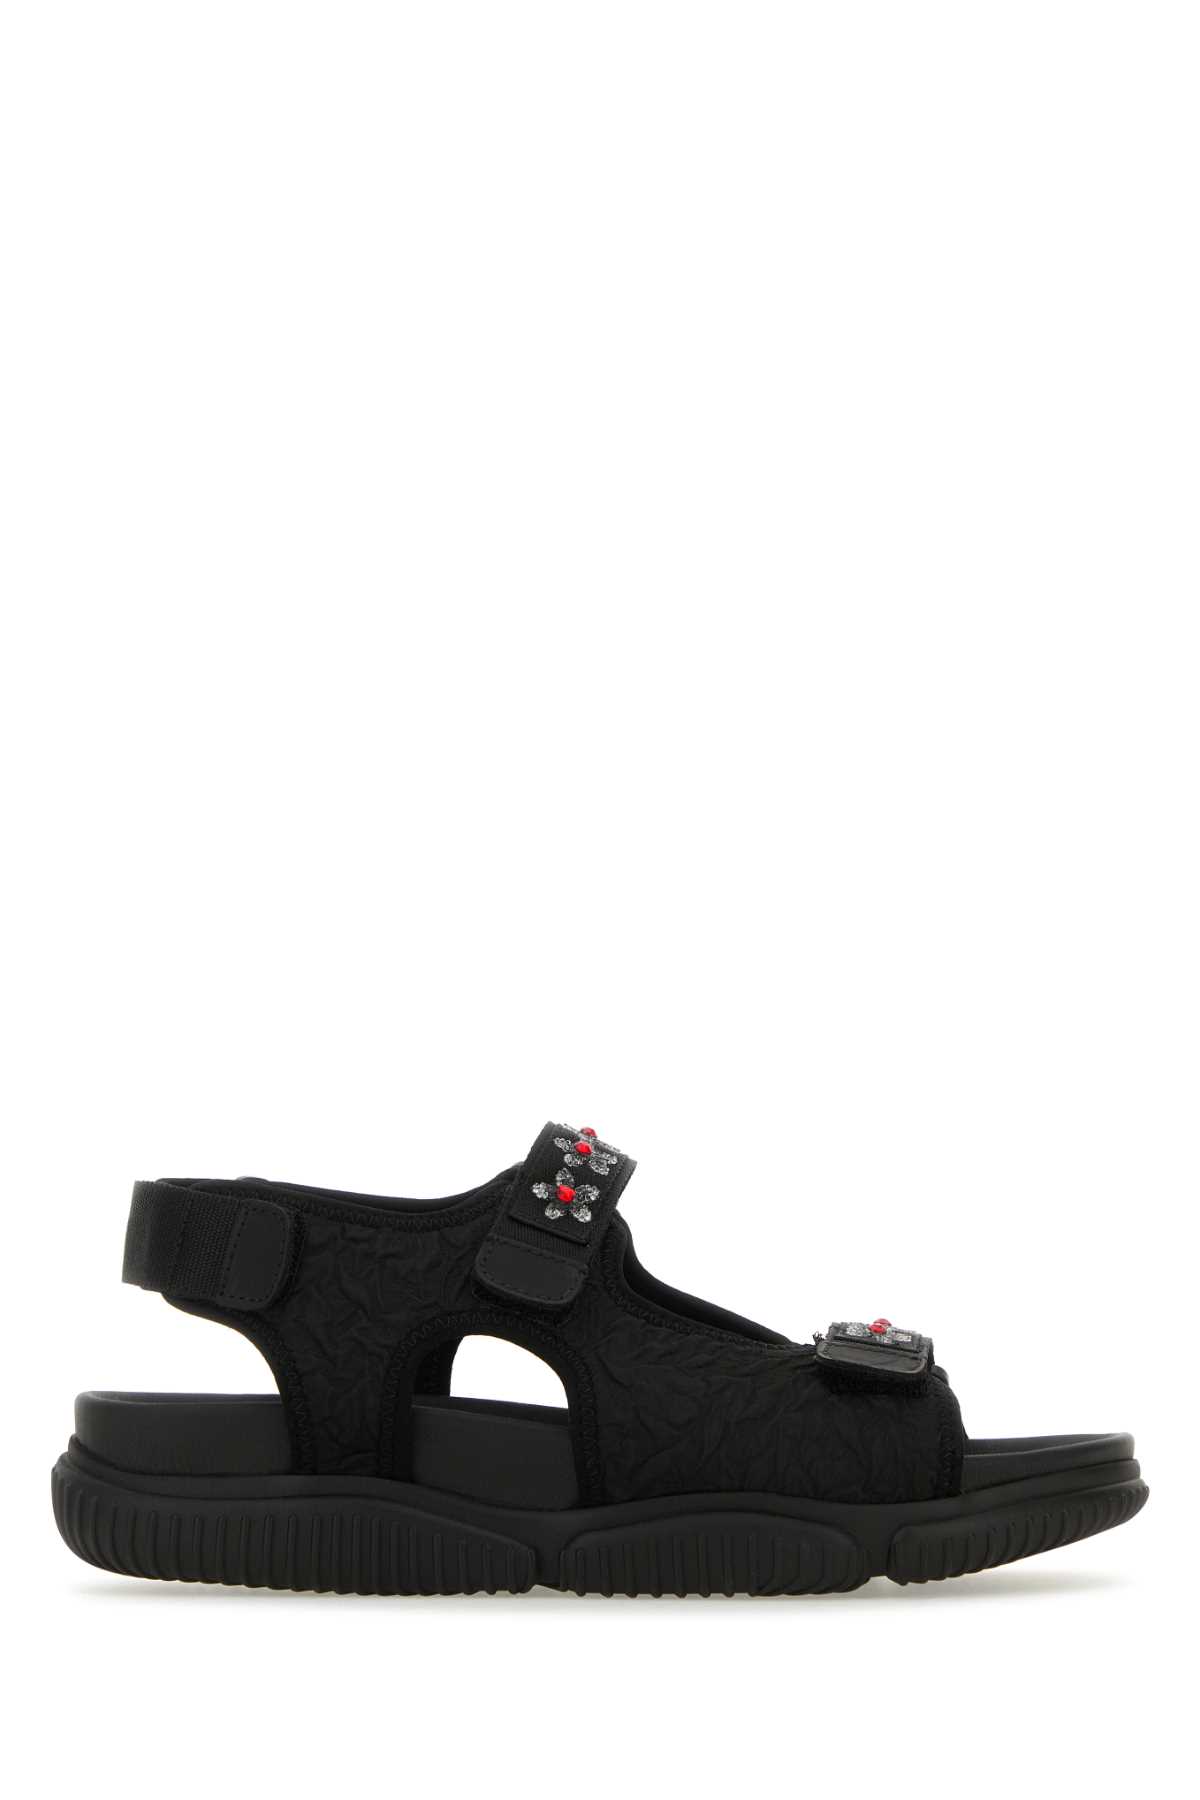 Black Fabric Sandals